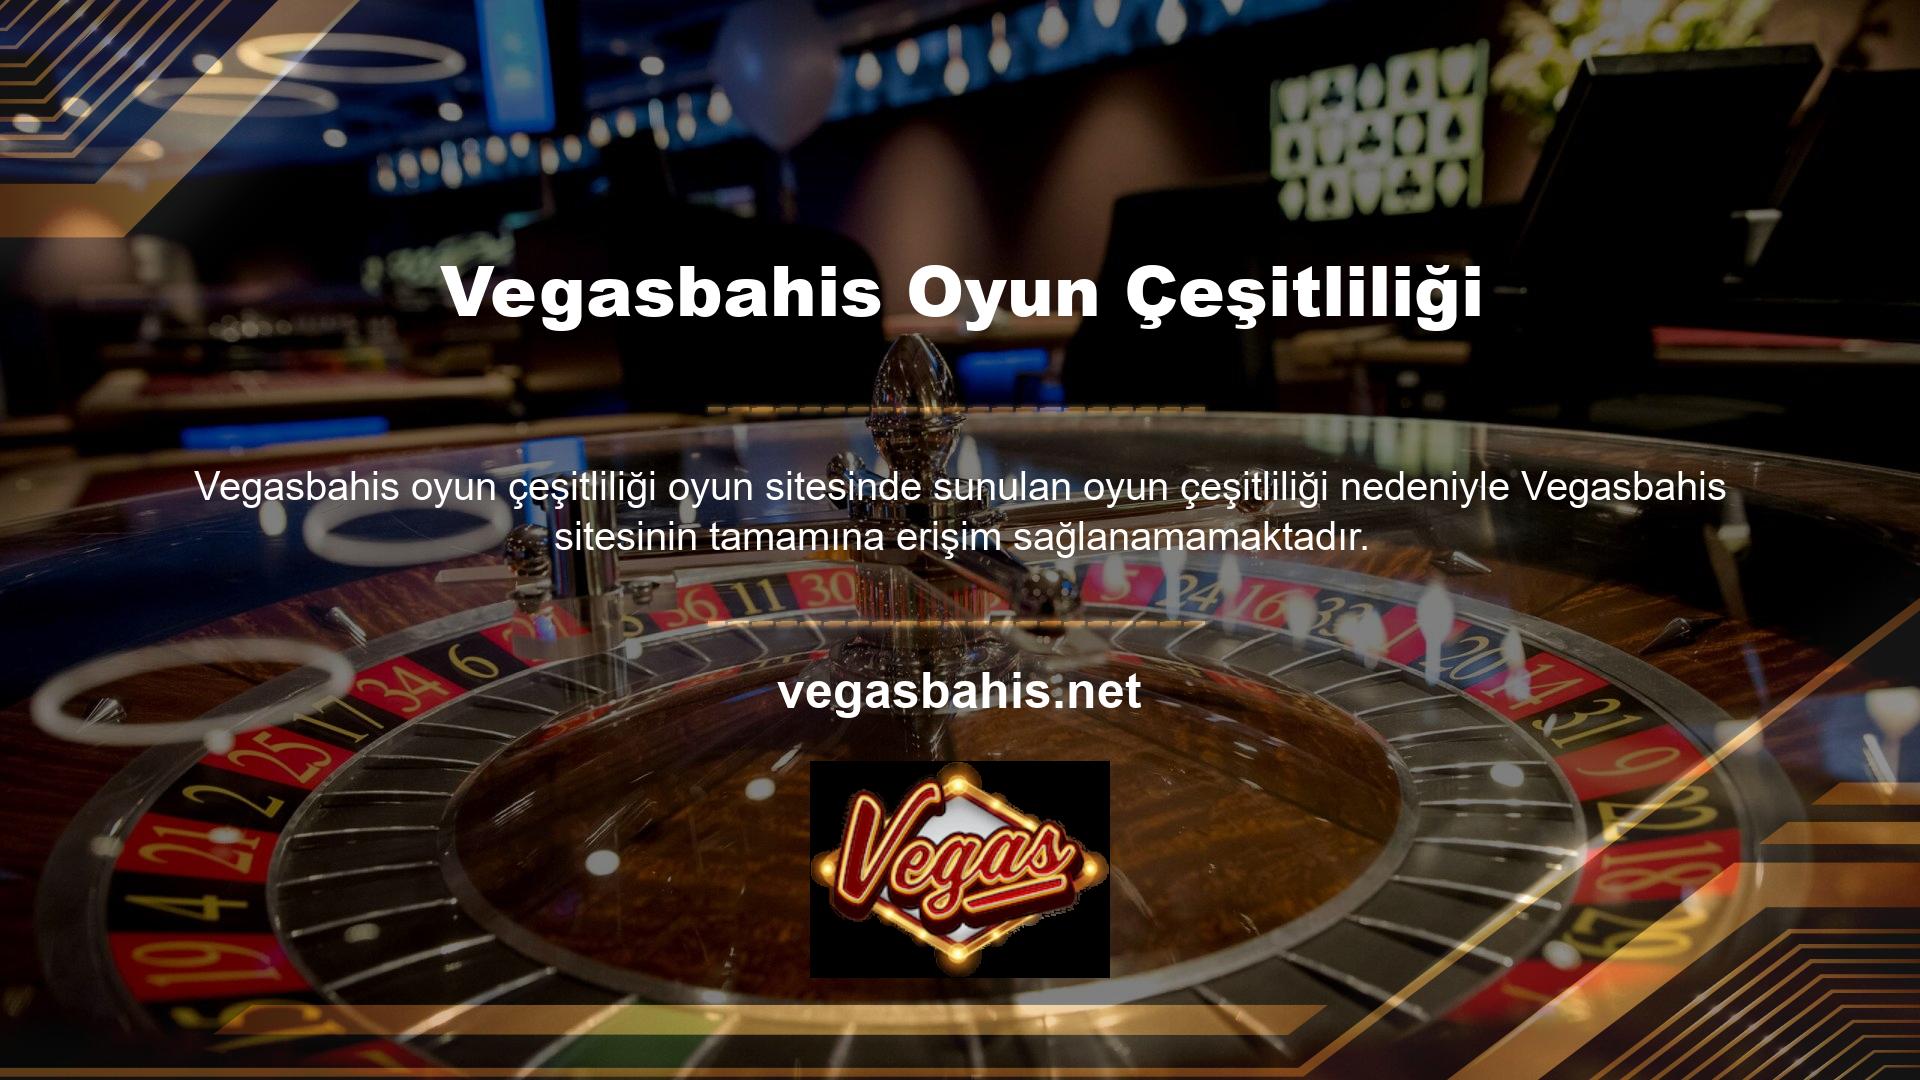 Vegasbahis web sitesini neden ziyaret edemiyorum? Her yaşa hitap eden ve iyi oranlar sunan bahis şubeleri de bulunmaktadır